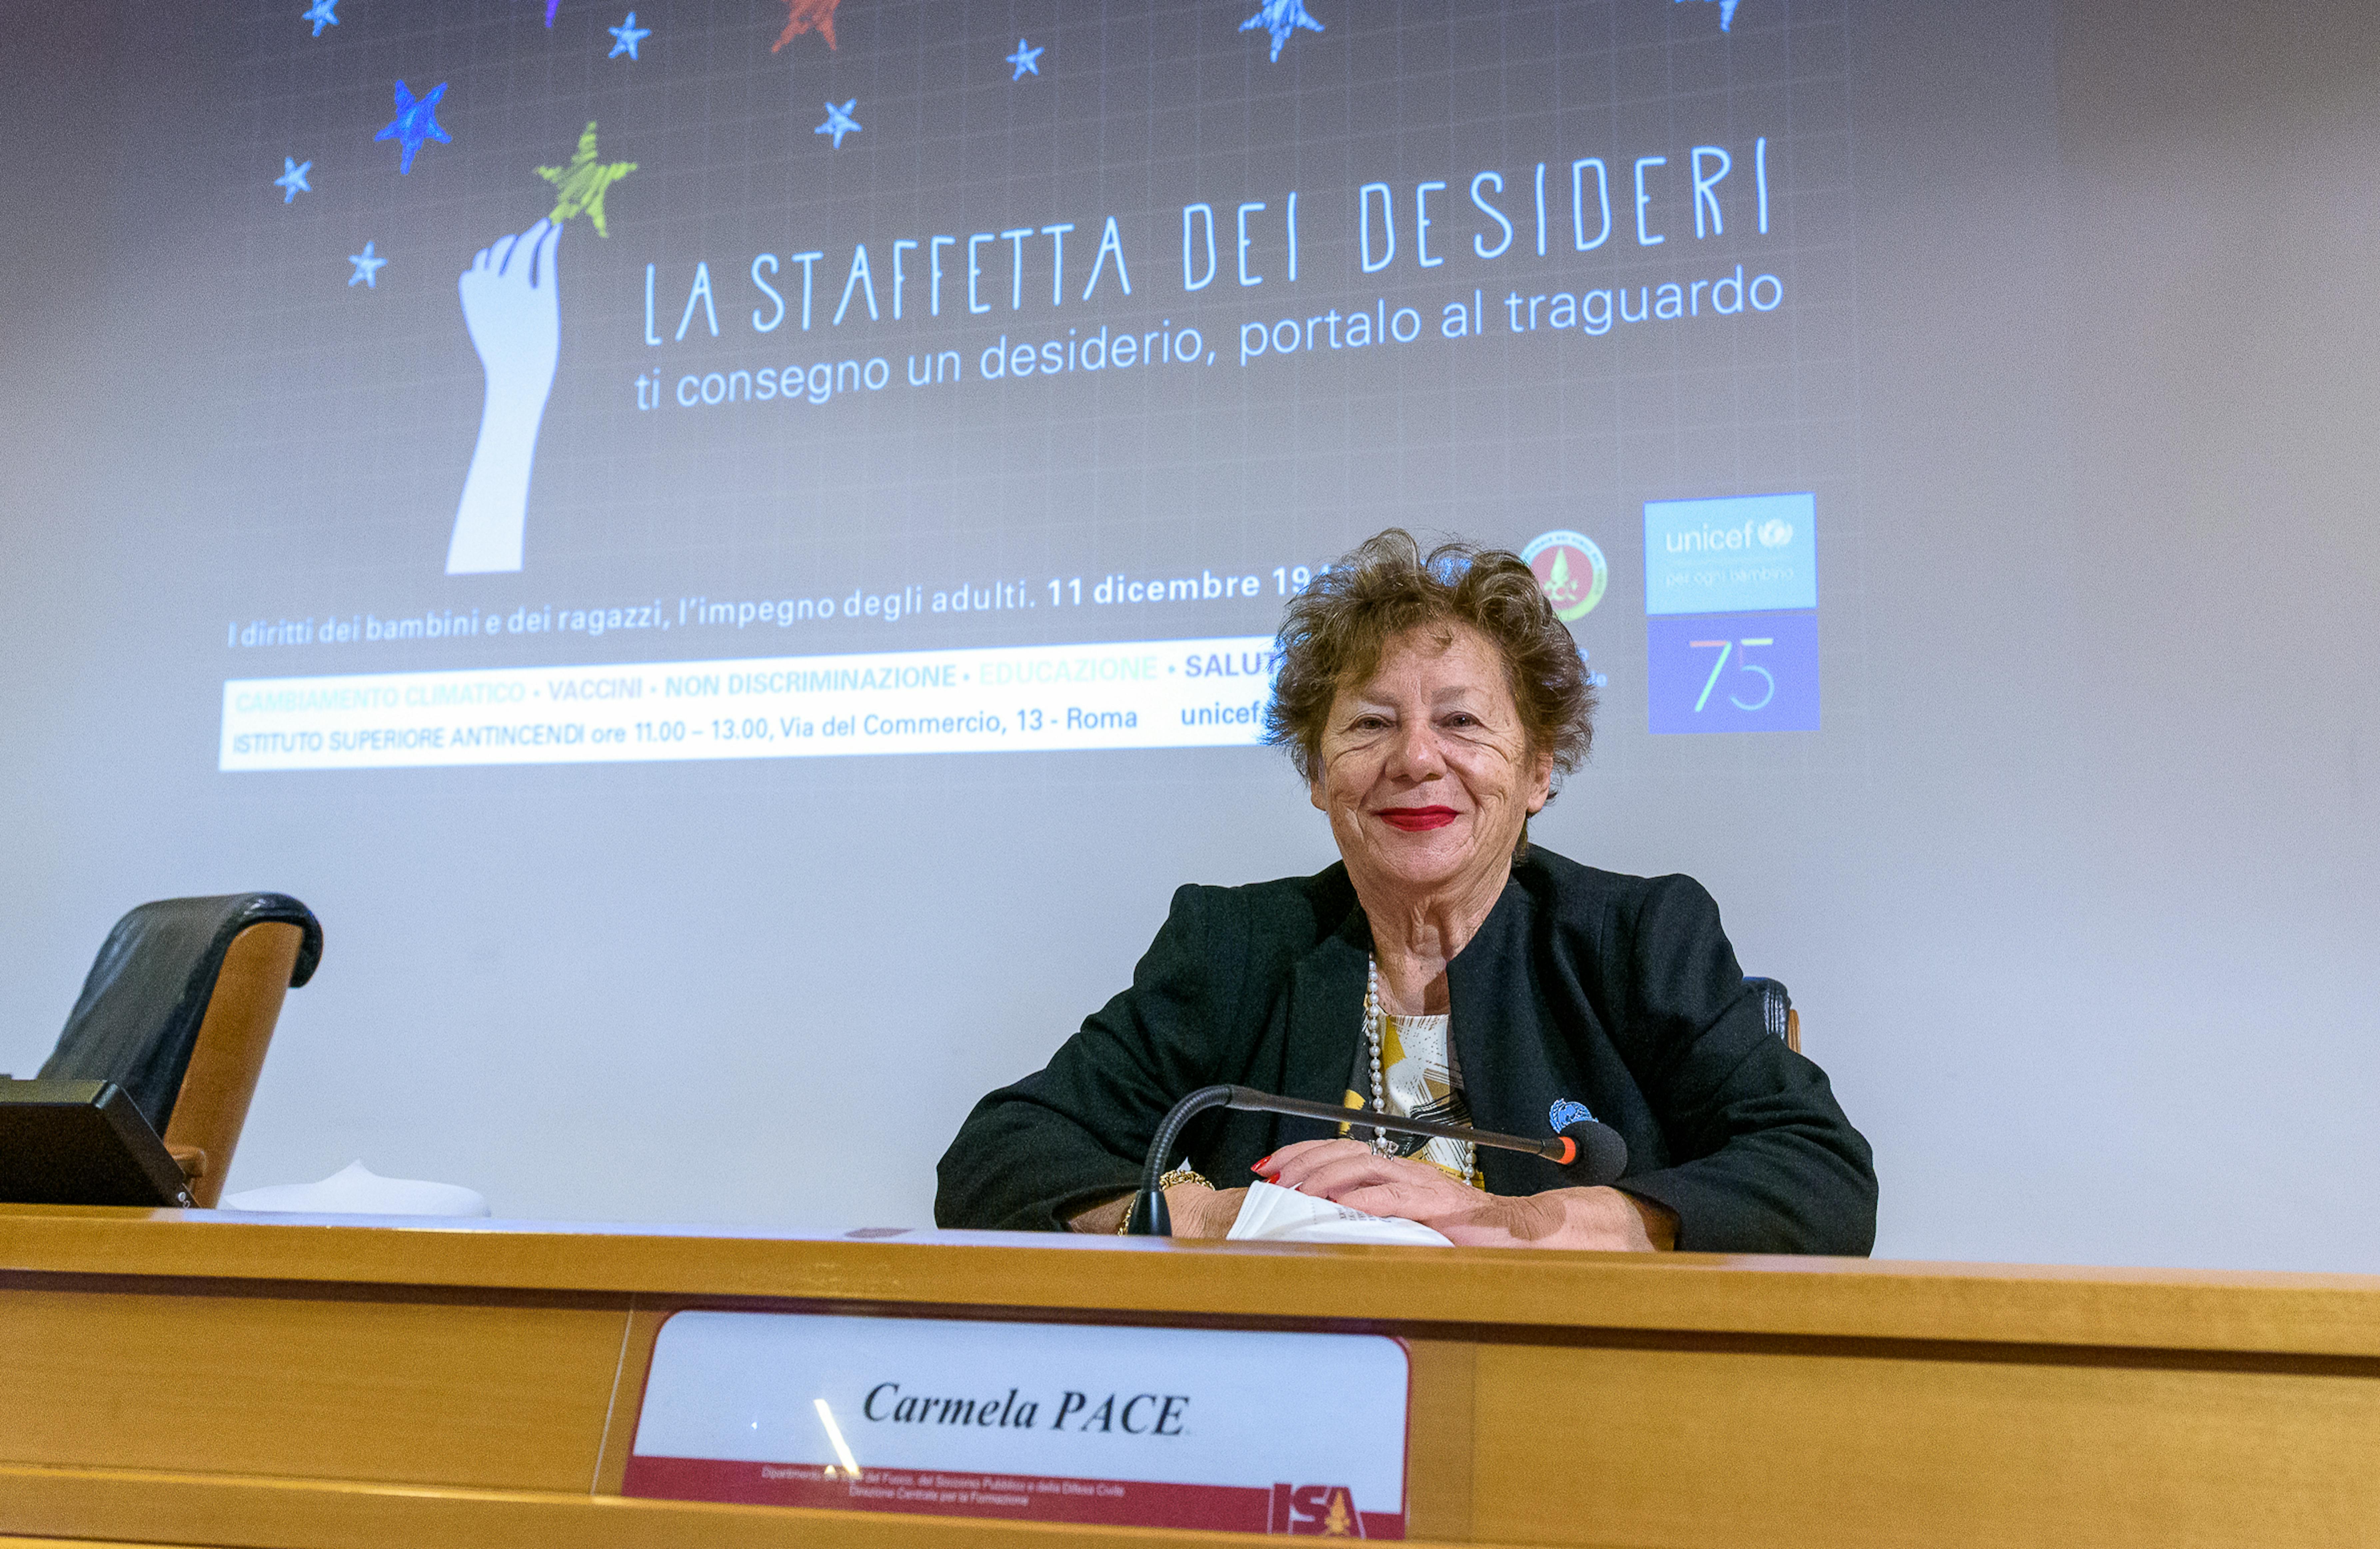 Carmela Pace, Presidente dell'UNICEF Italia, durante l'evento Staffetta dei Diritti